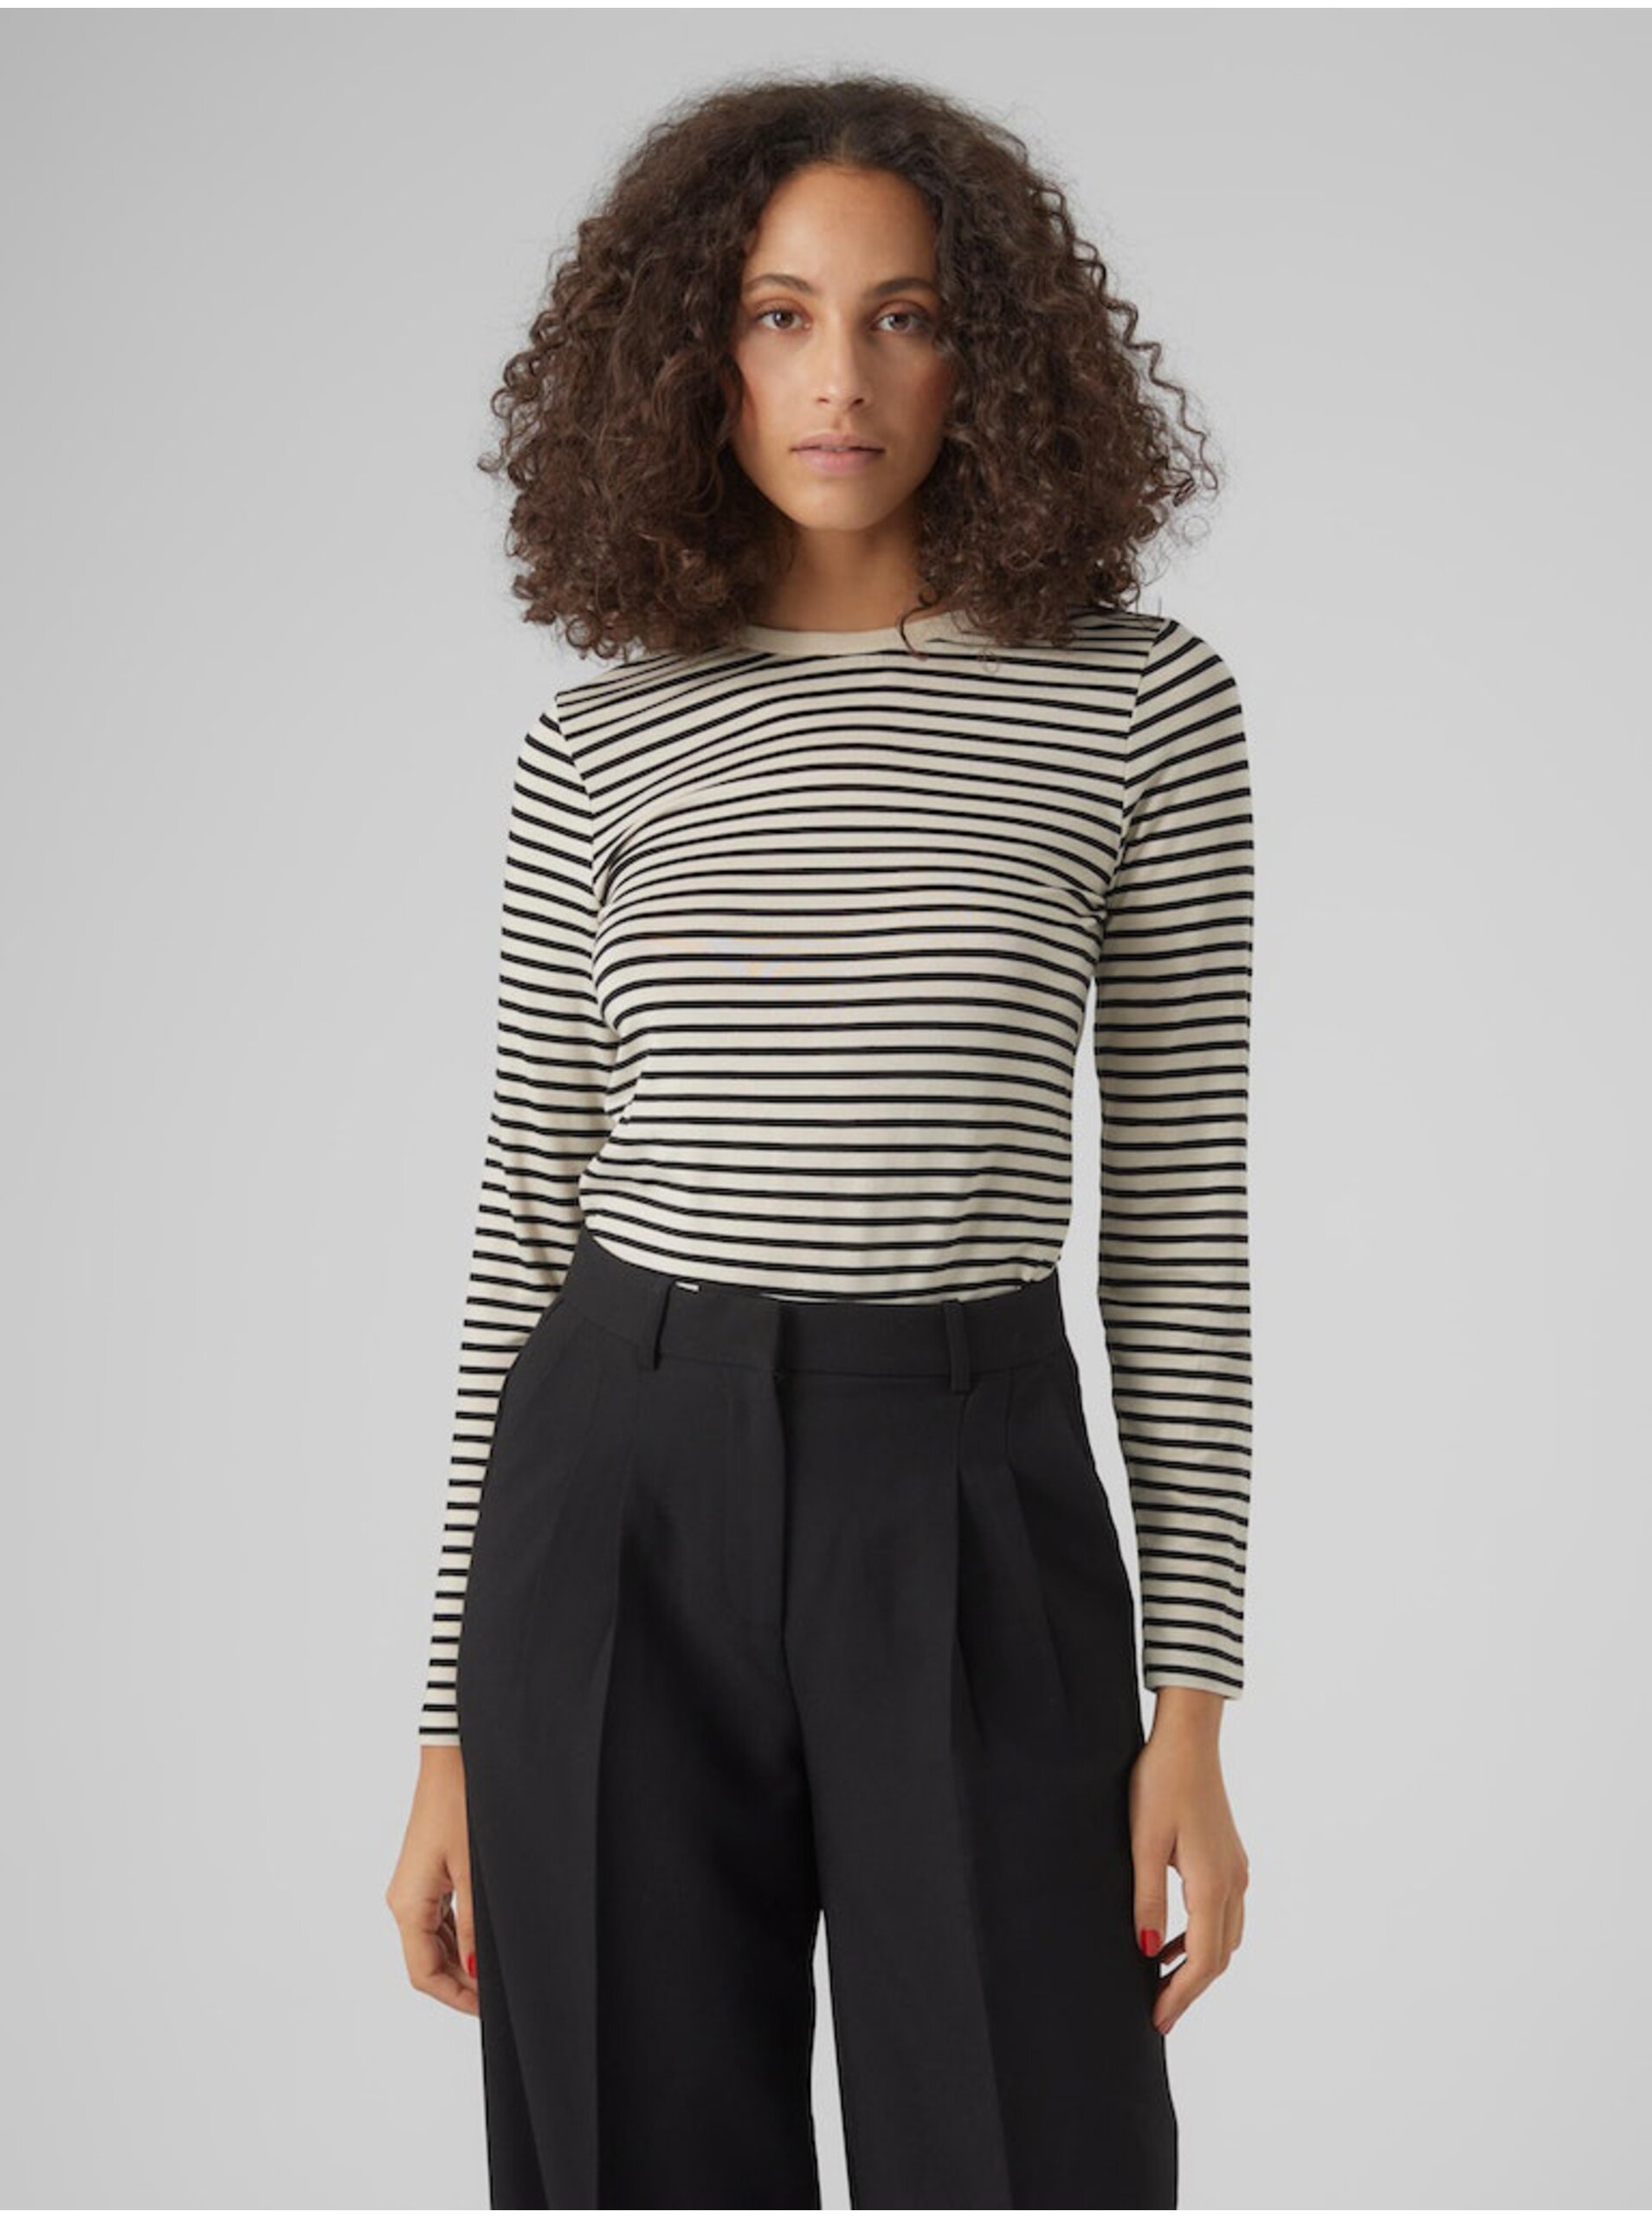 E-shop Černo-krémové dámské pruhované tričko Vero Moda Fiona